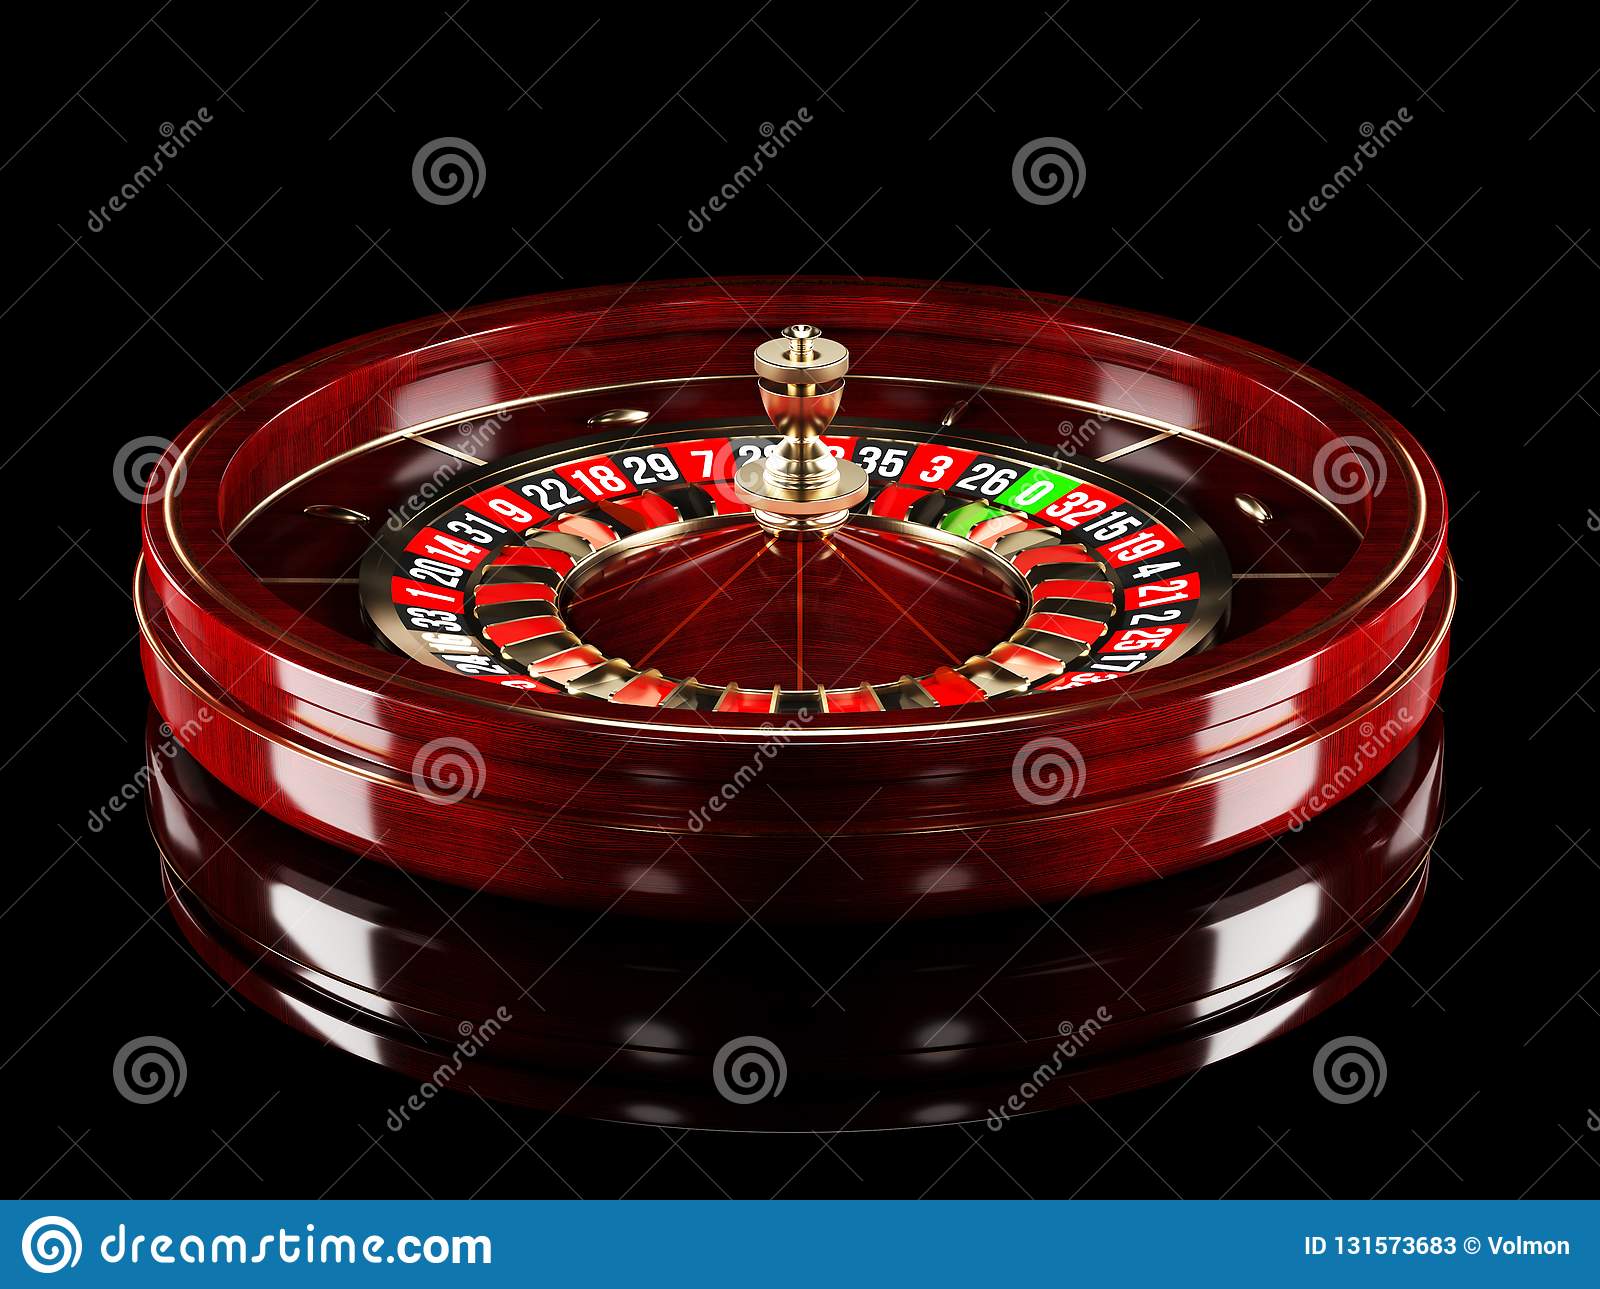 Играть в казино хивагер